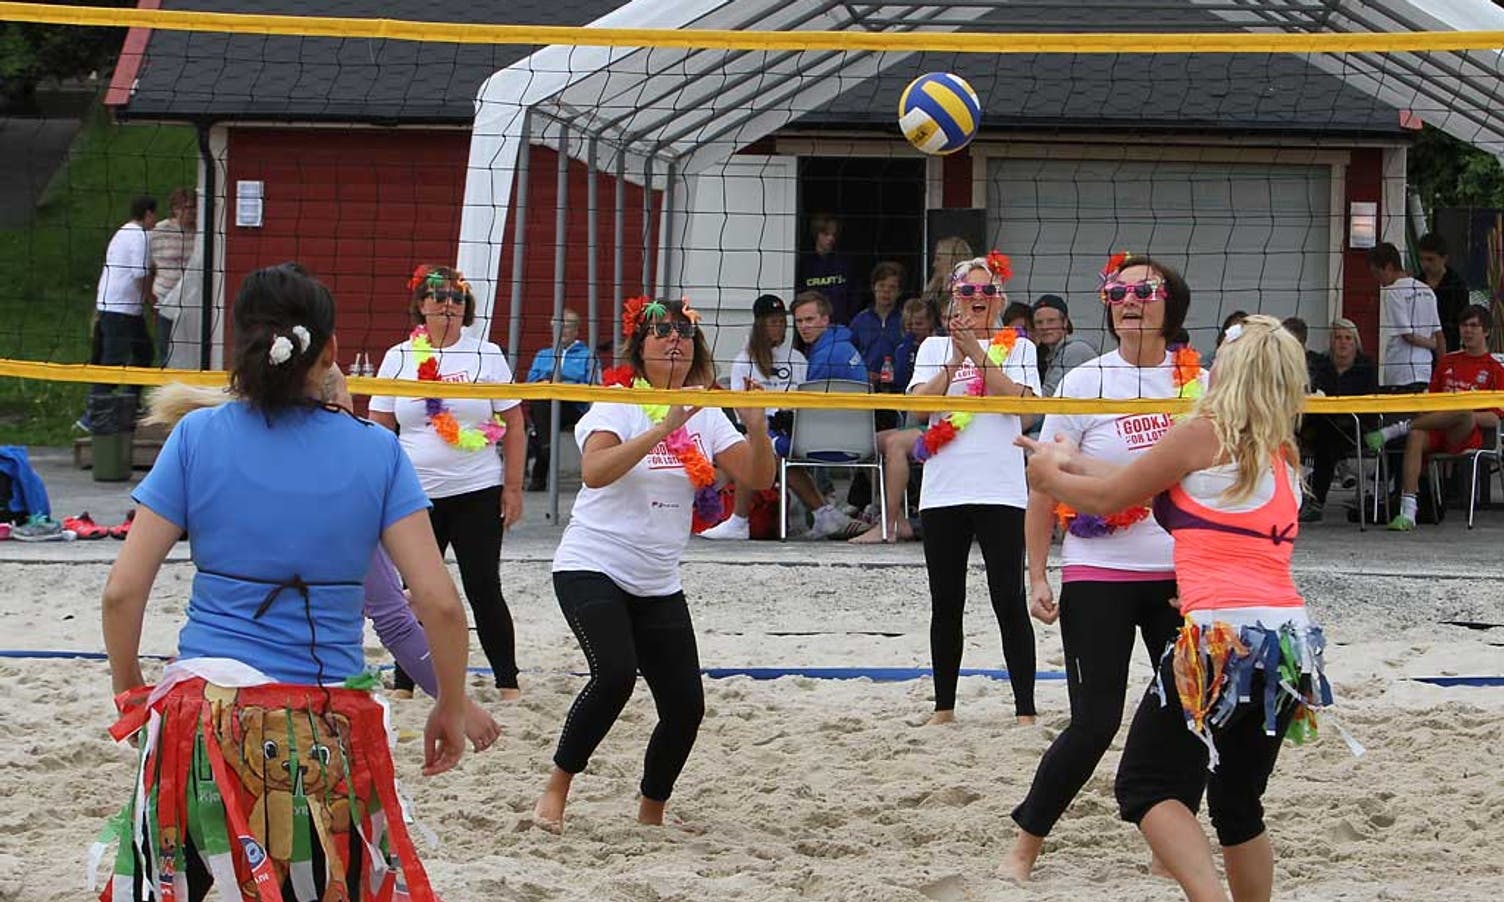 Det er konkurranse i både volleyball og fotball. (Foto: KVB)